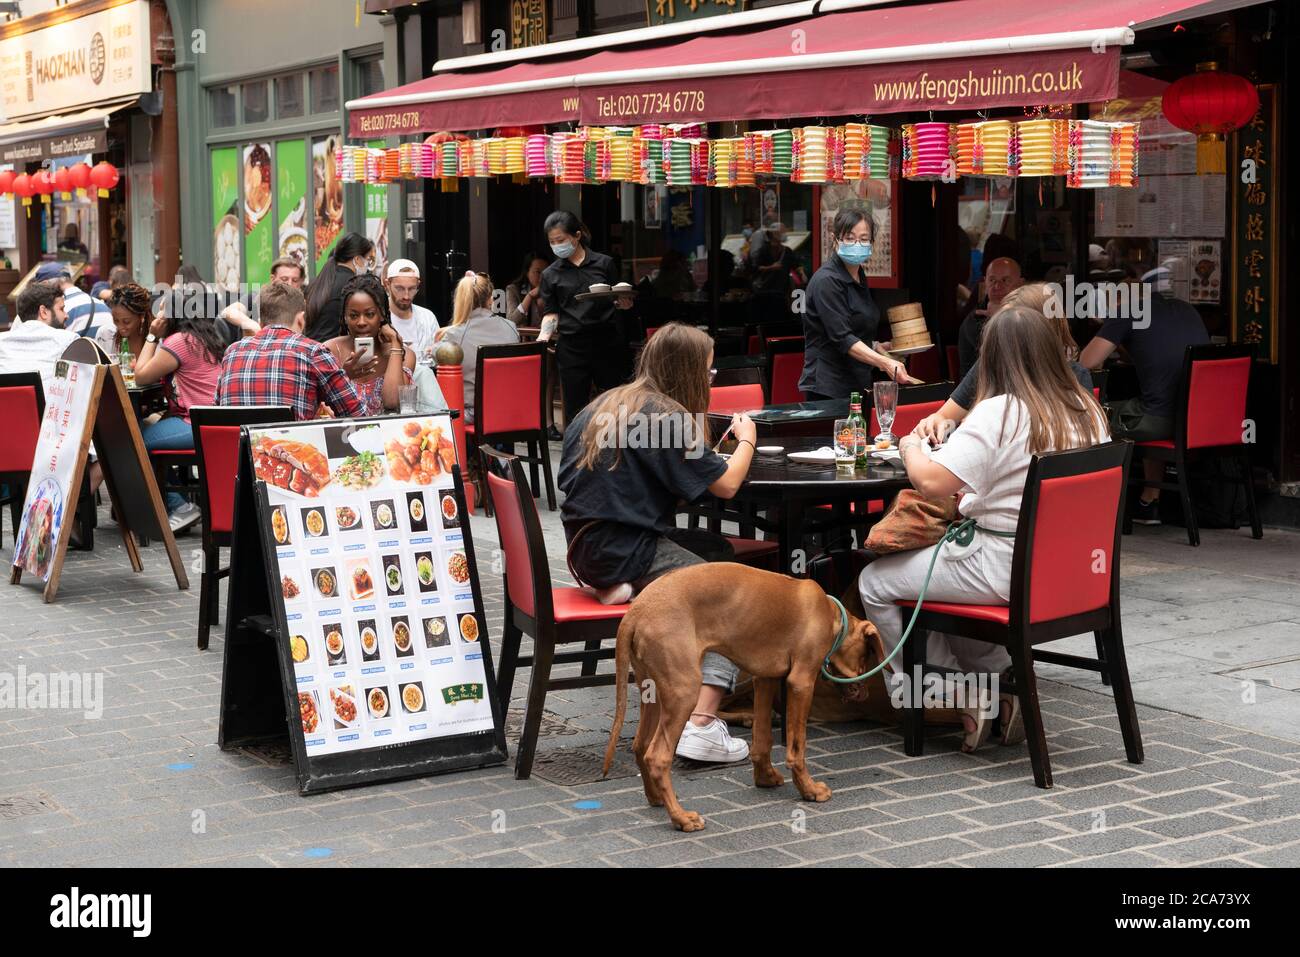 Les clients peuvent manger aux tables de restaurant en plein air de Chinatown pendant le programme manger à l'extérieur pour aider les clients à profiter d'une réduction sur les repas pour aider à stimuler les restaurants et les pubs après le confinement. Banque D'Images